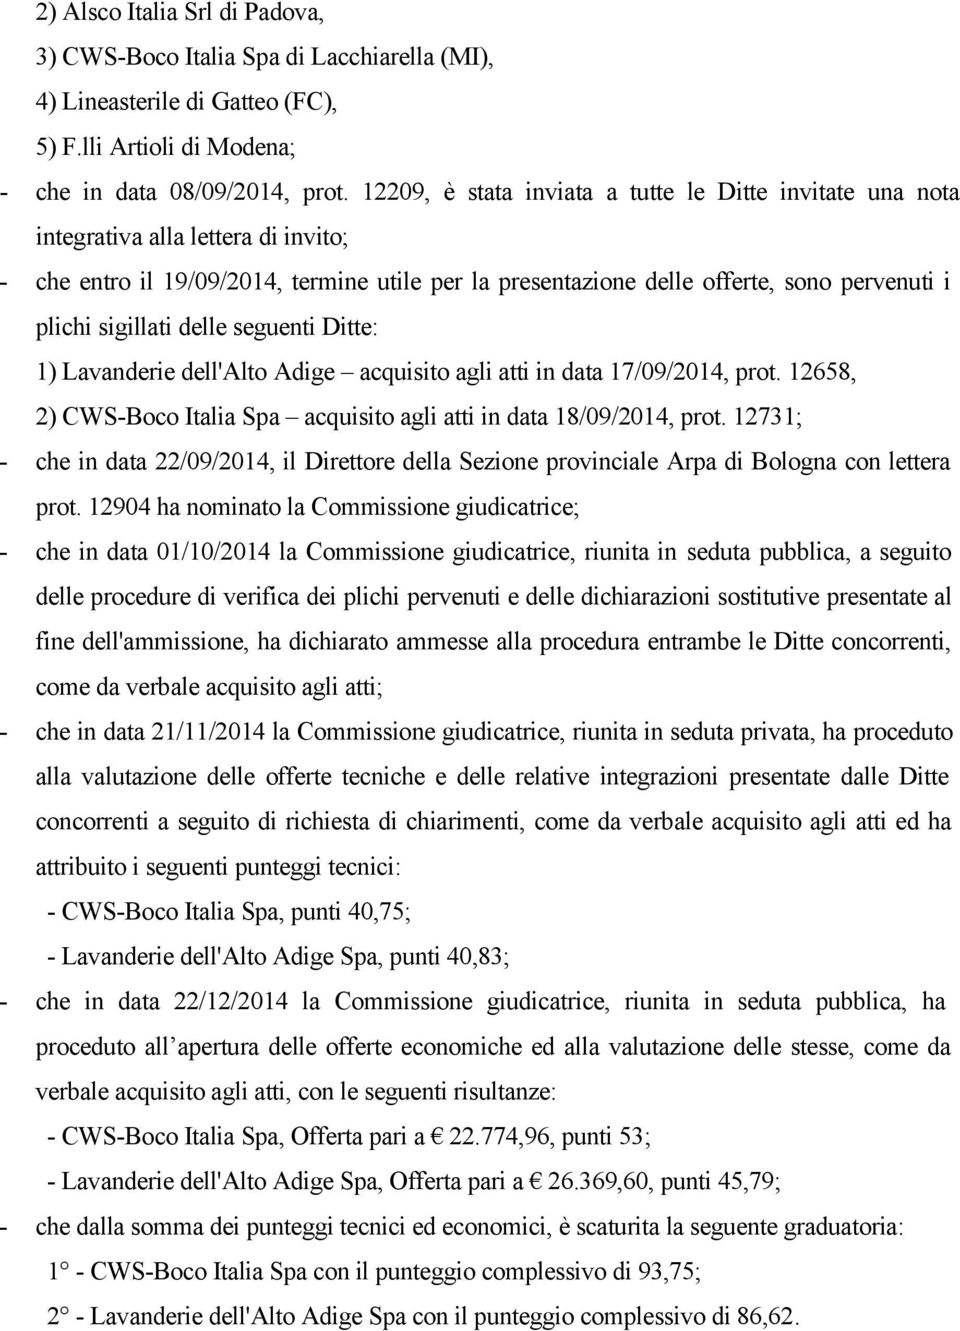 sigillati delle seguenti Ditte: 1) Lavanderie dell'alto Adige acquisito agli atti in data 17/09/2014, prot. 12658, 2) CWS-Boco Italia Spa acquisito agli atti in data 18/09/2014, prot.